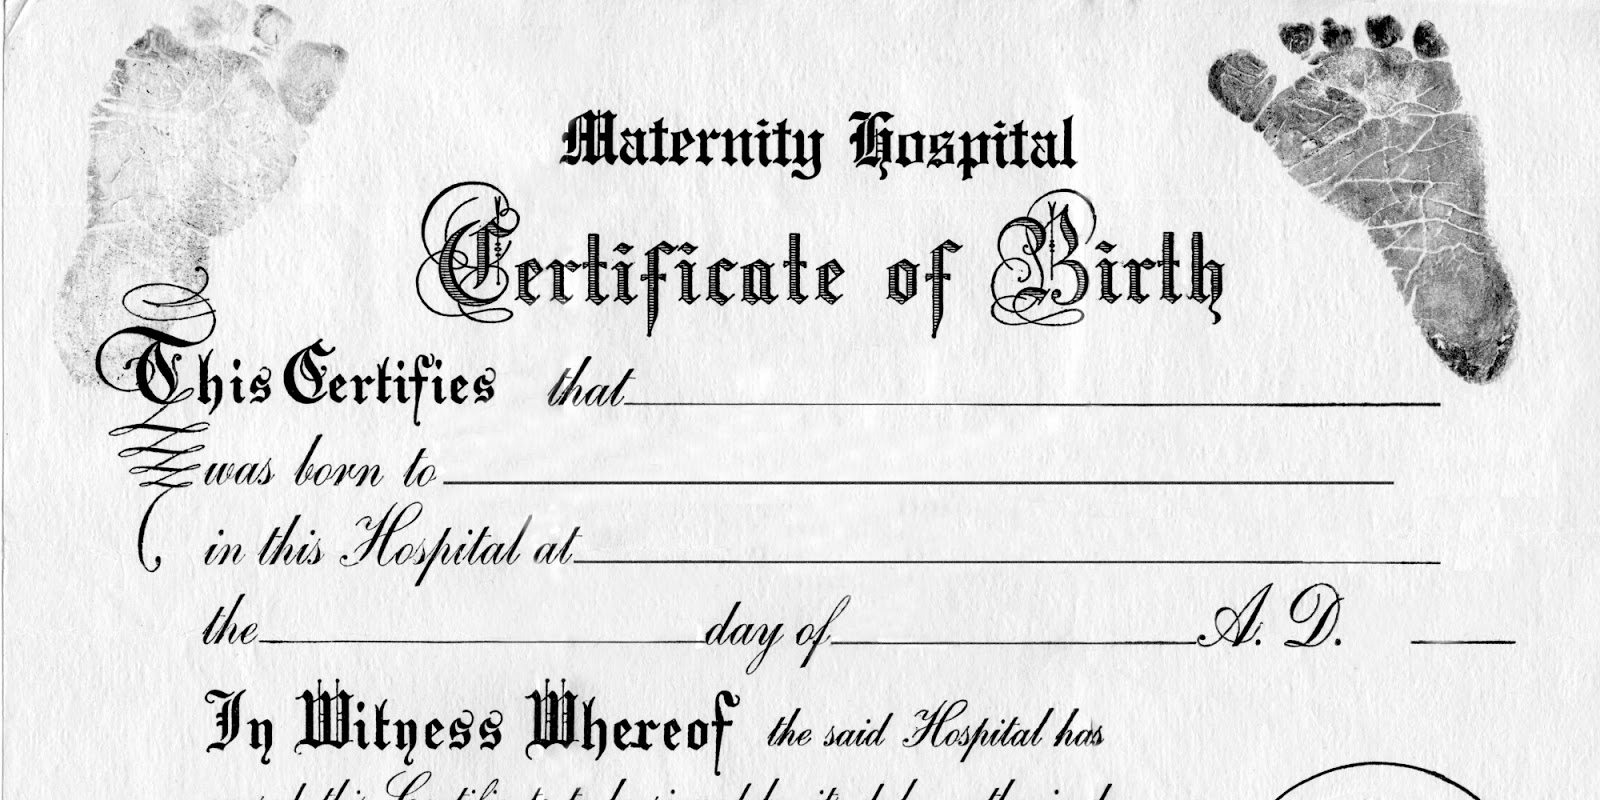 only-human-children-suffer-when-birth-certificates-lie